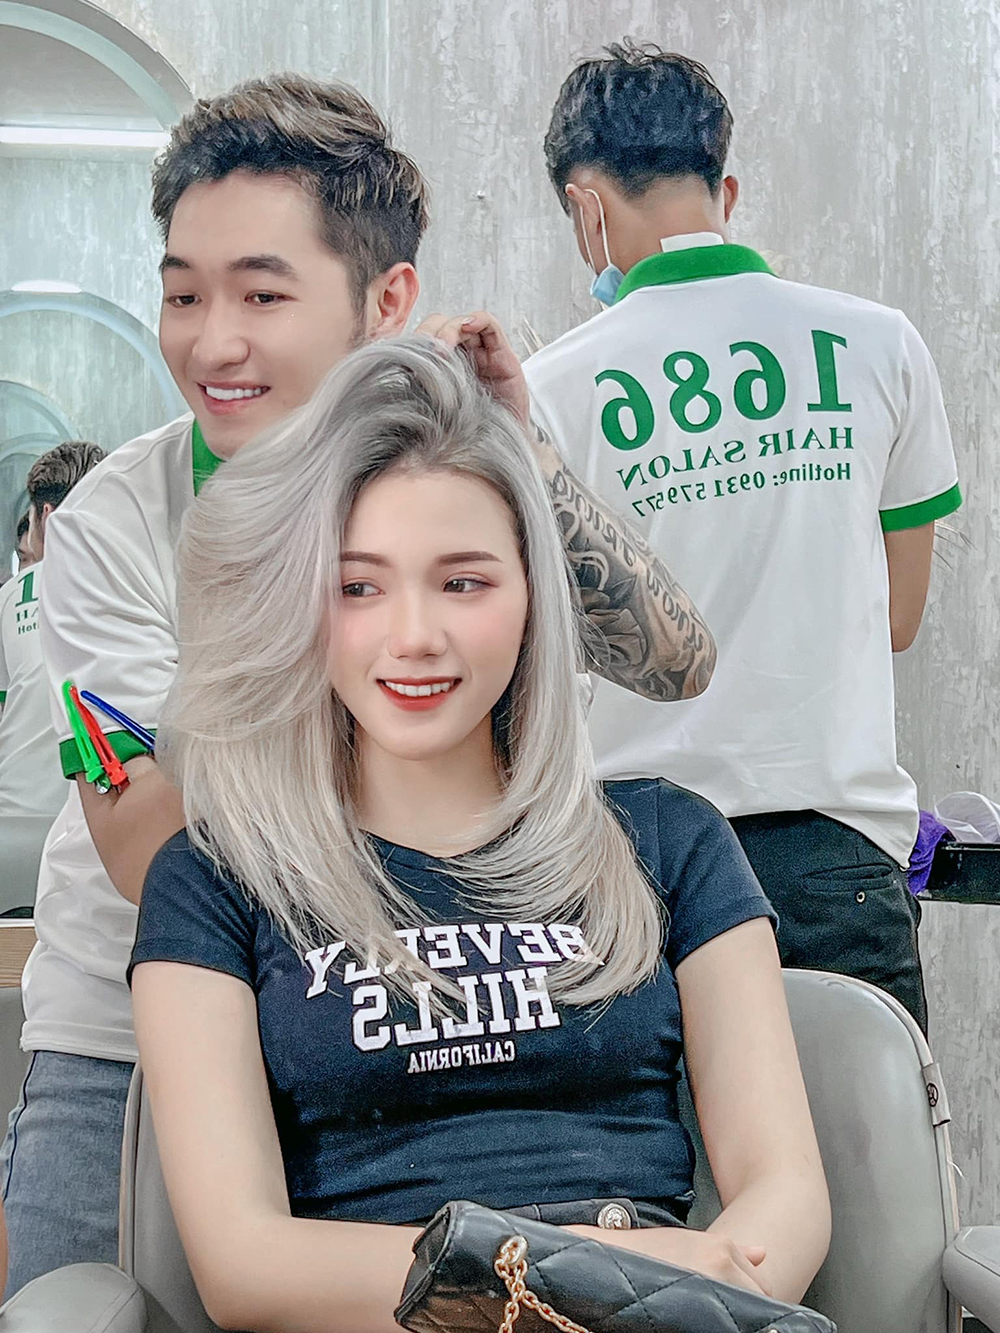 dong phuc nhan vien 1686 hair salon - luxury